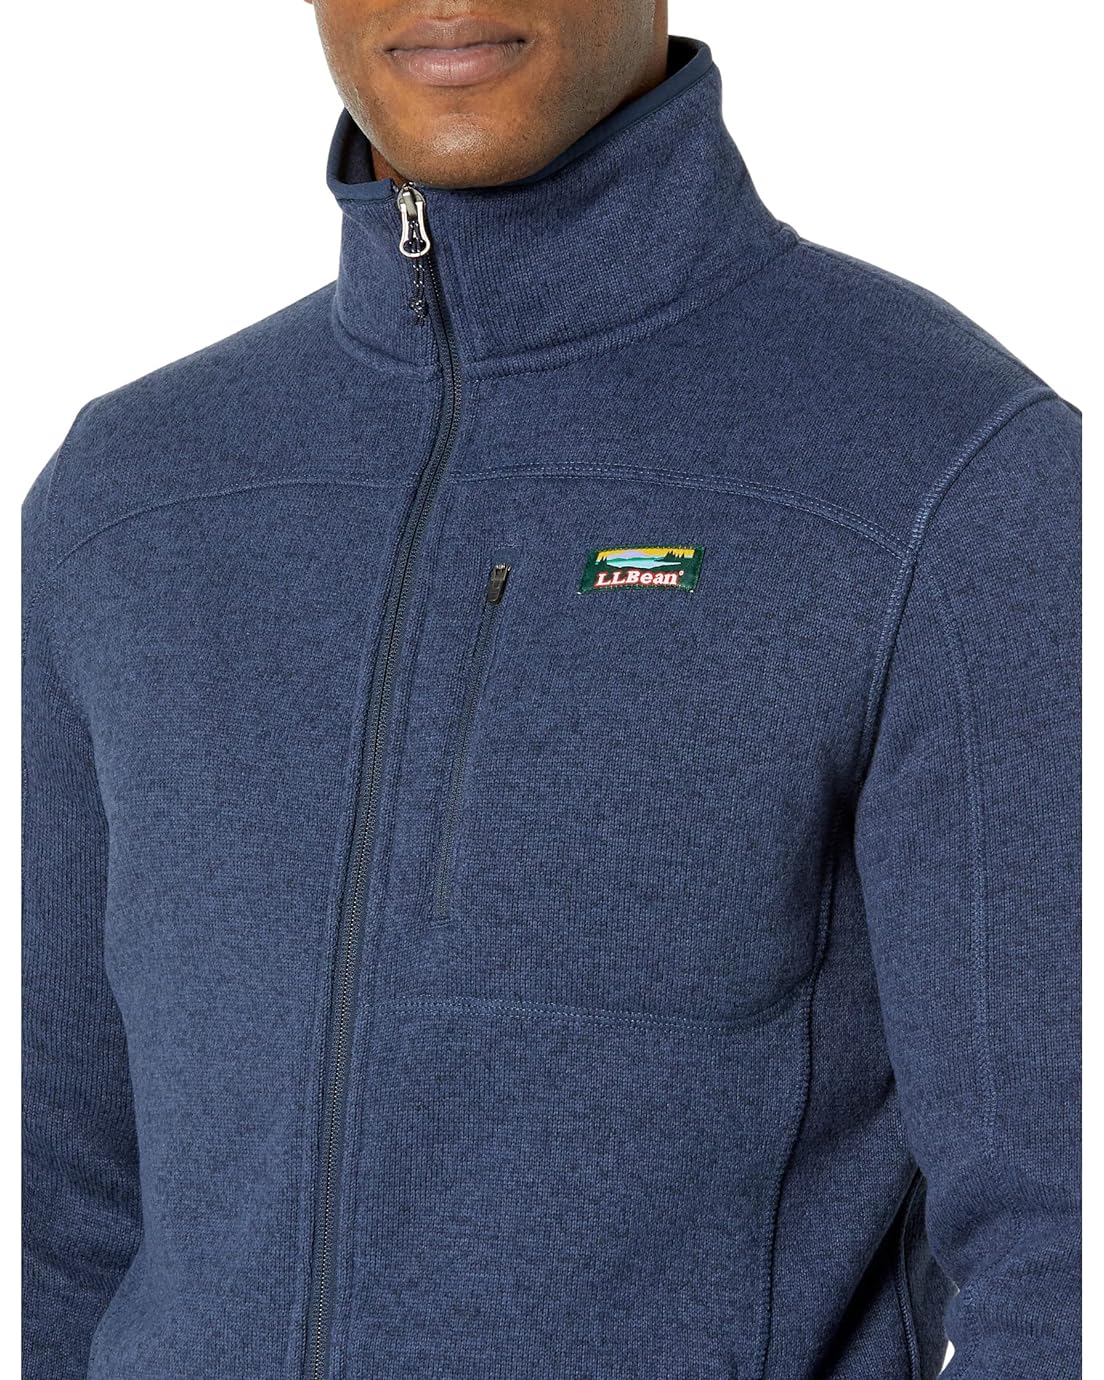  L.L.Bean Sweater Fleece Full Zip Jacket - Tall